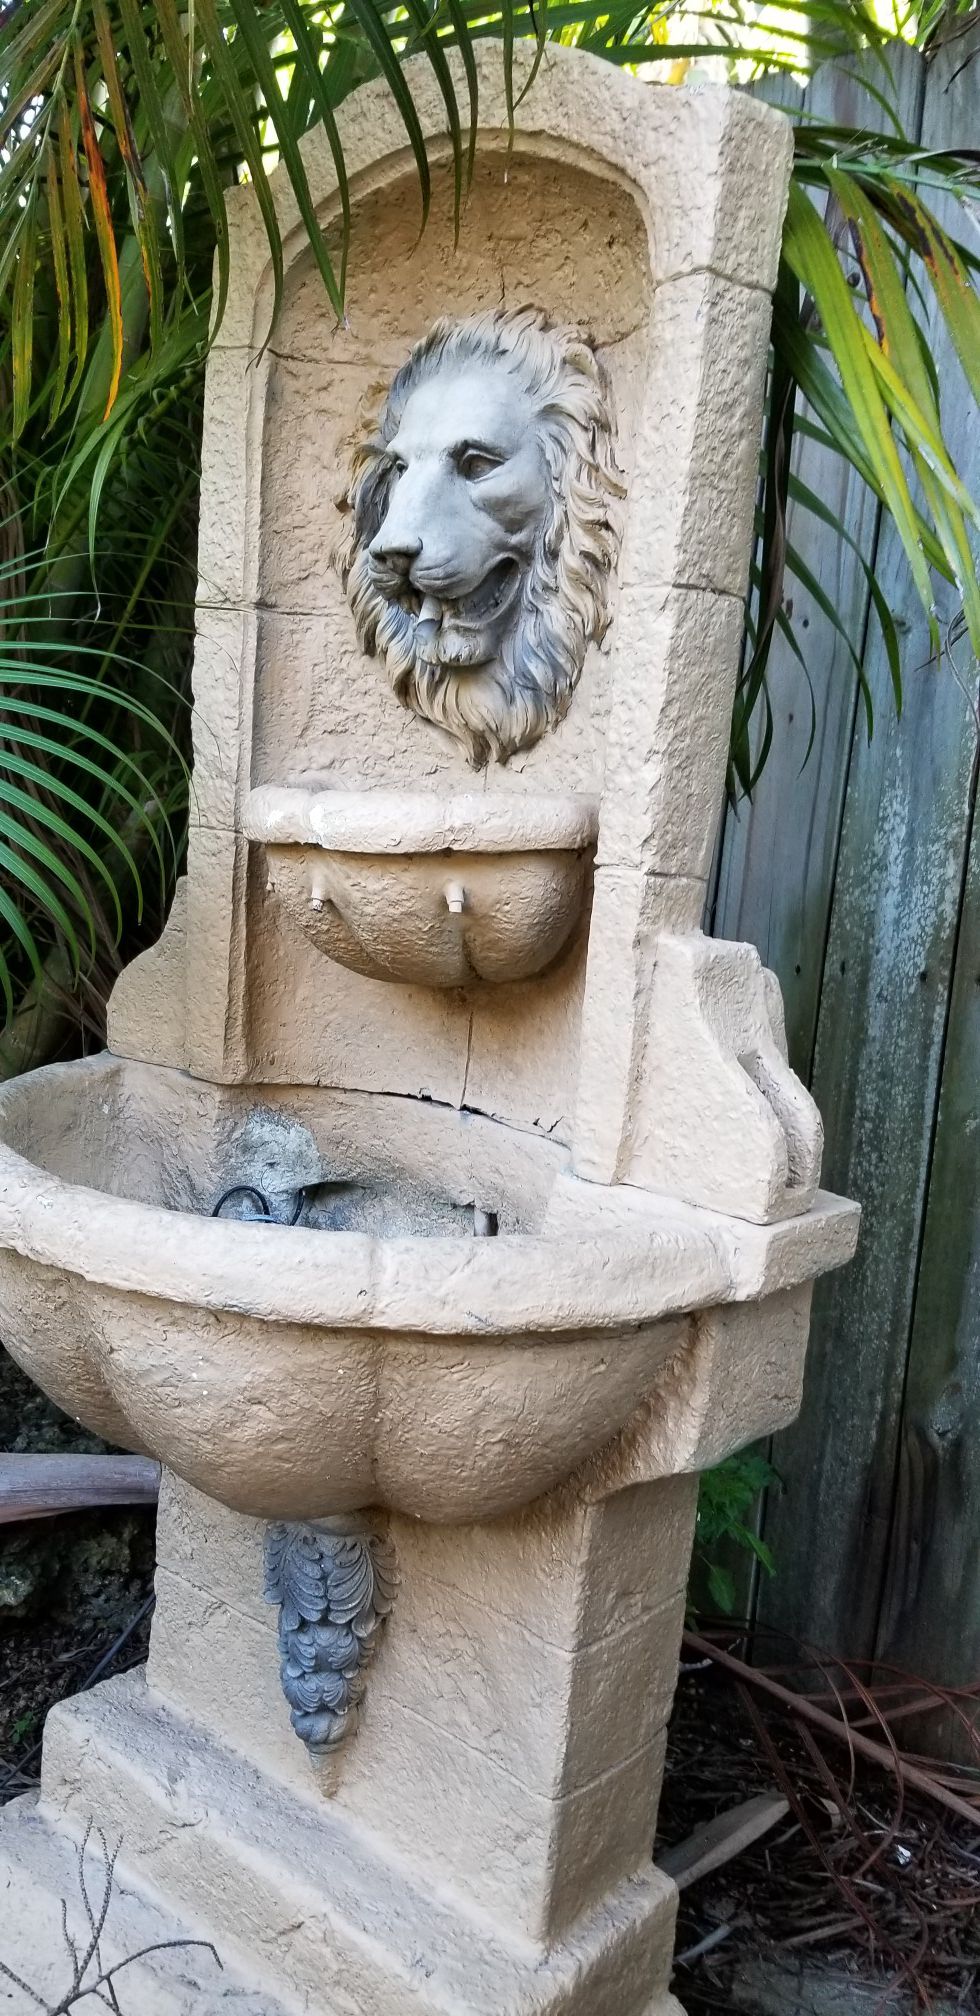 Garden fountain